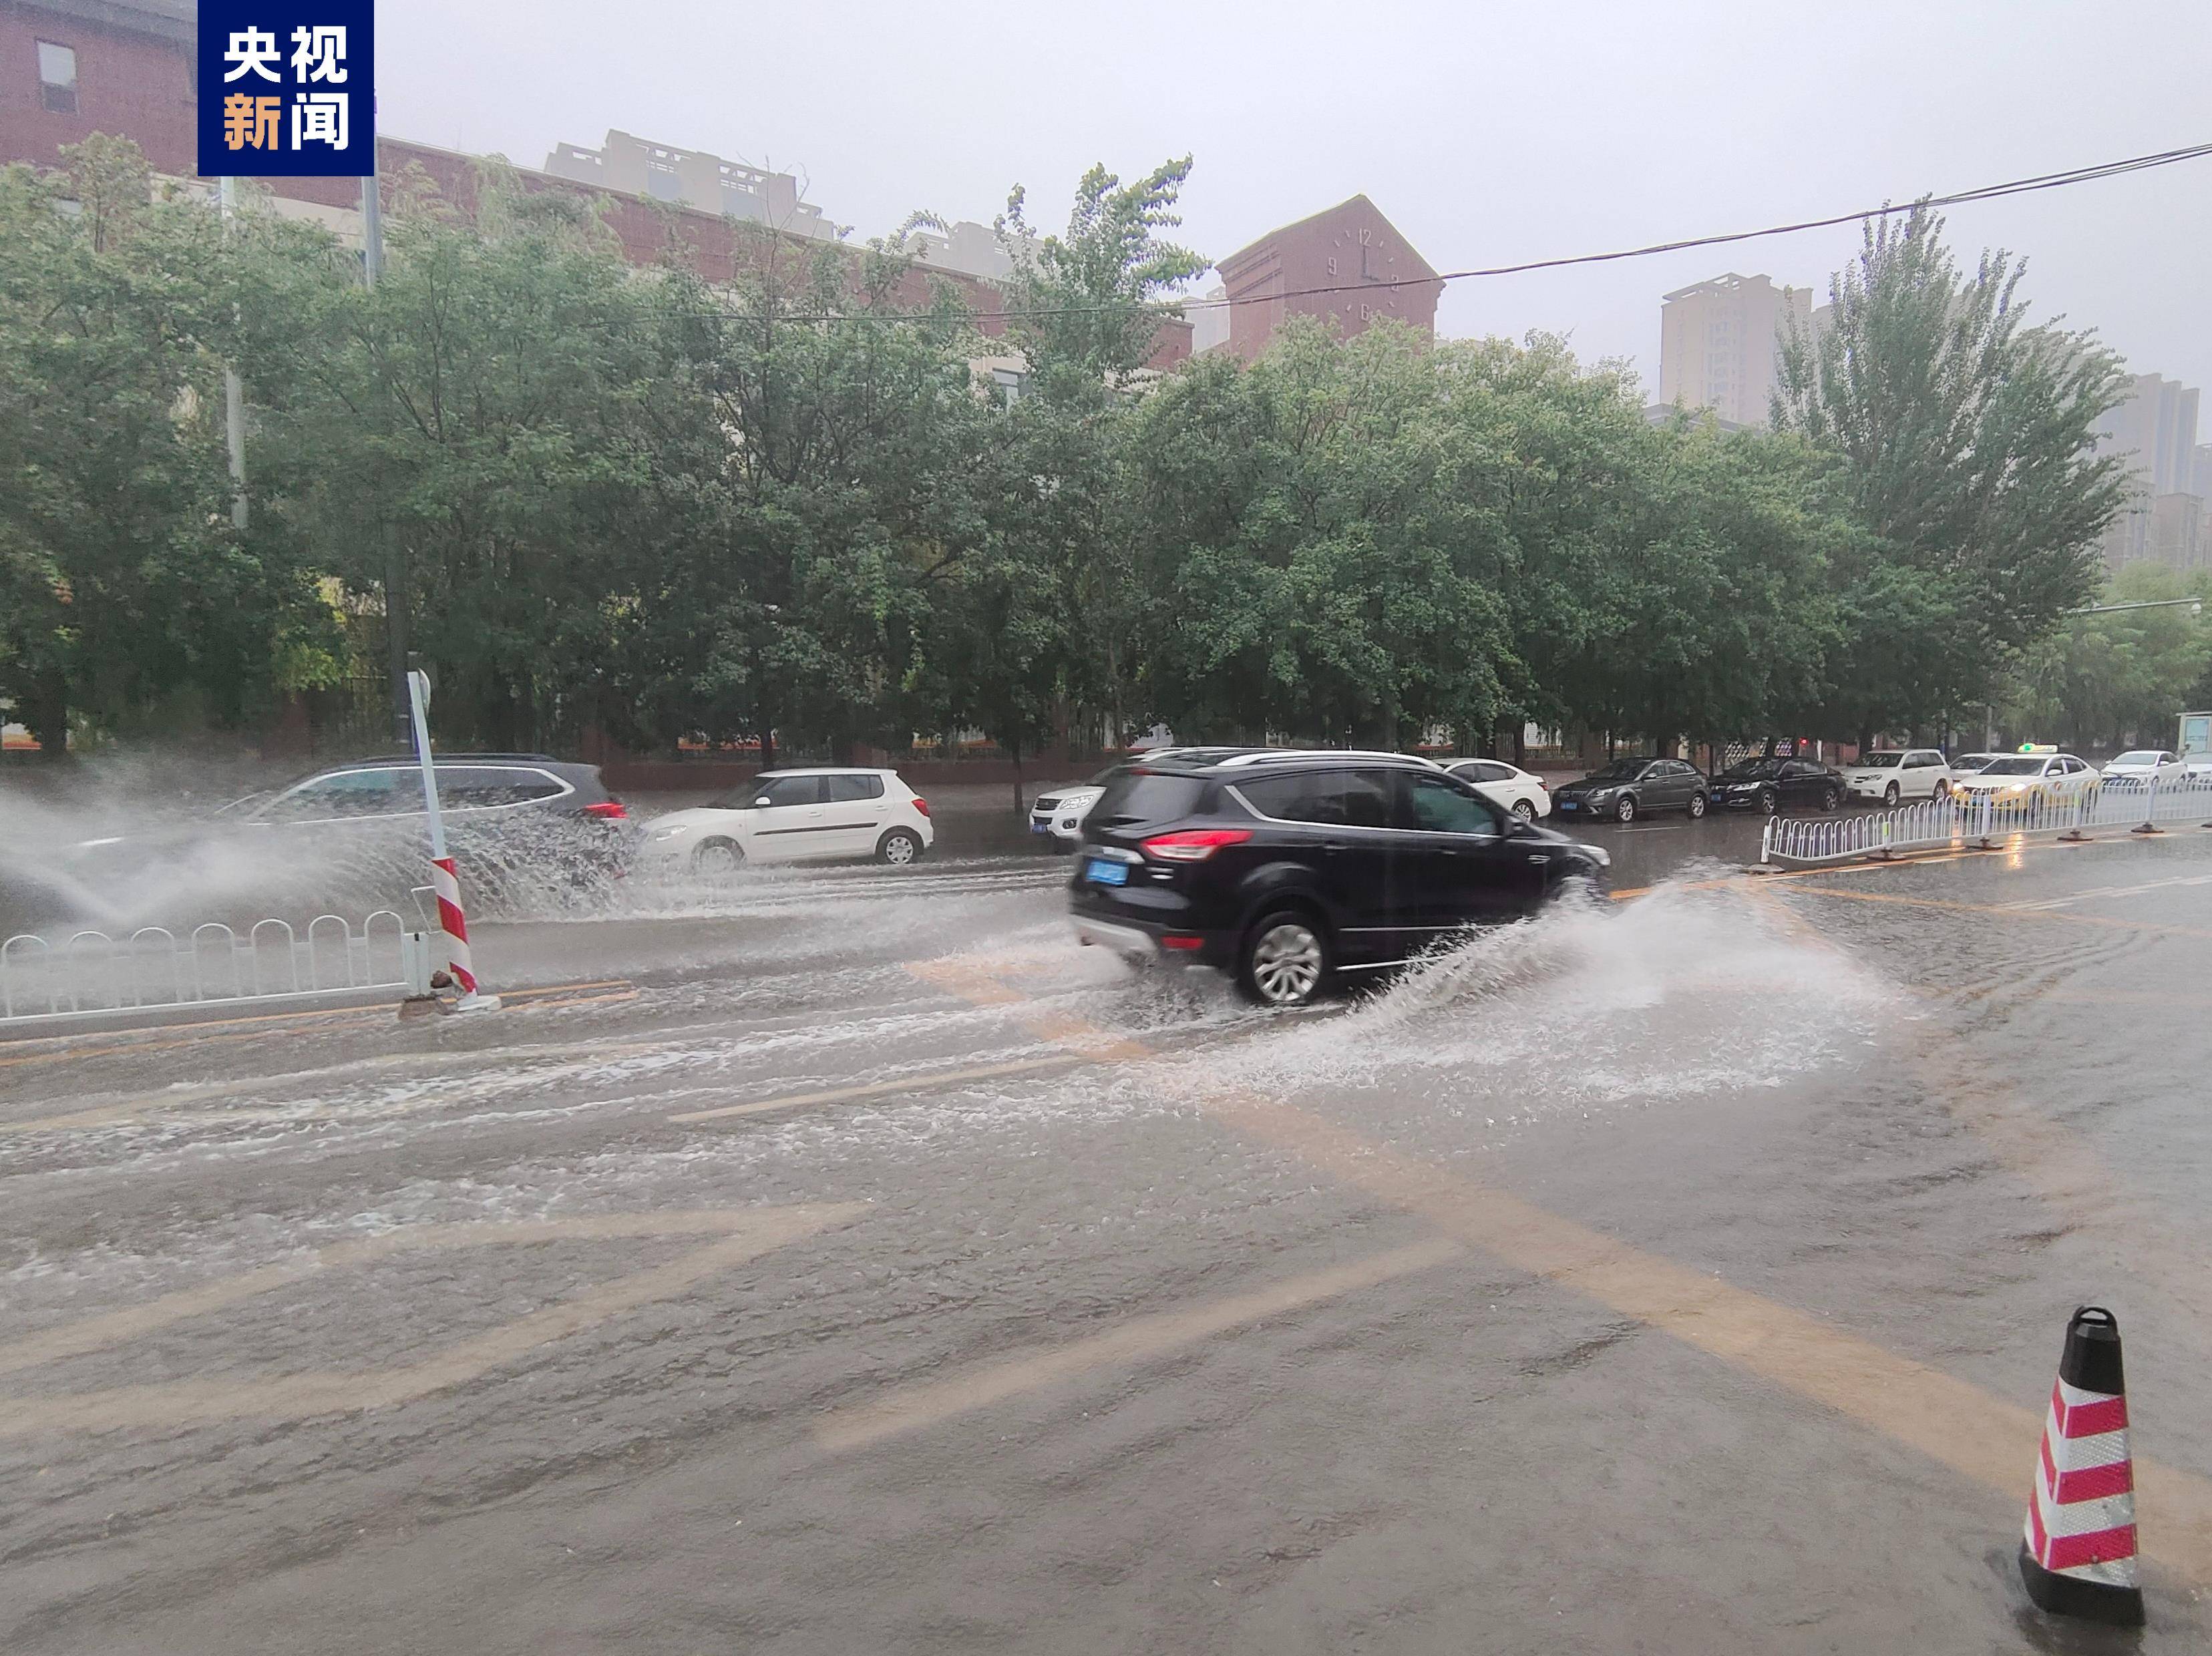 辽宁葫芦岛发布暴雨红色预警 强对流天气导致城区内涝严重 - 封面新闻